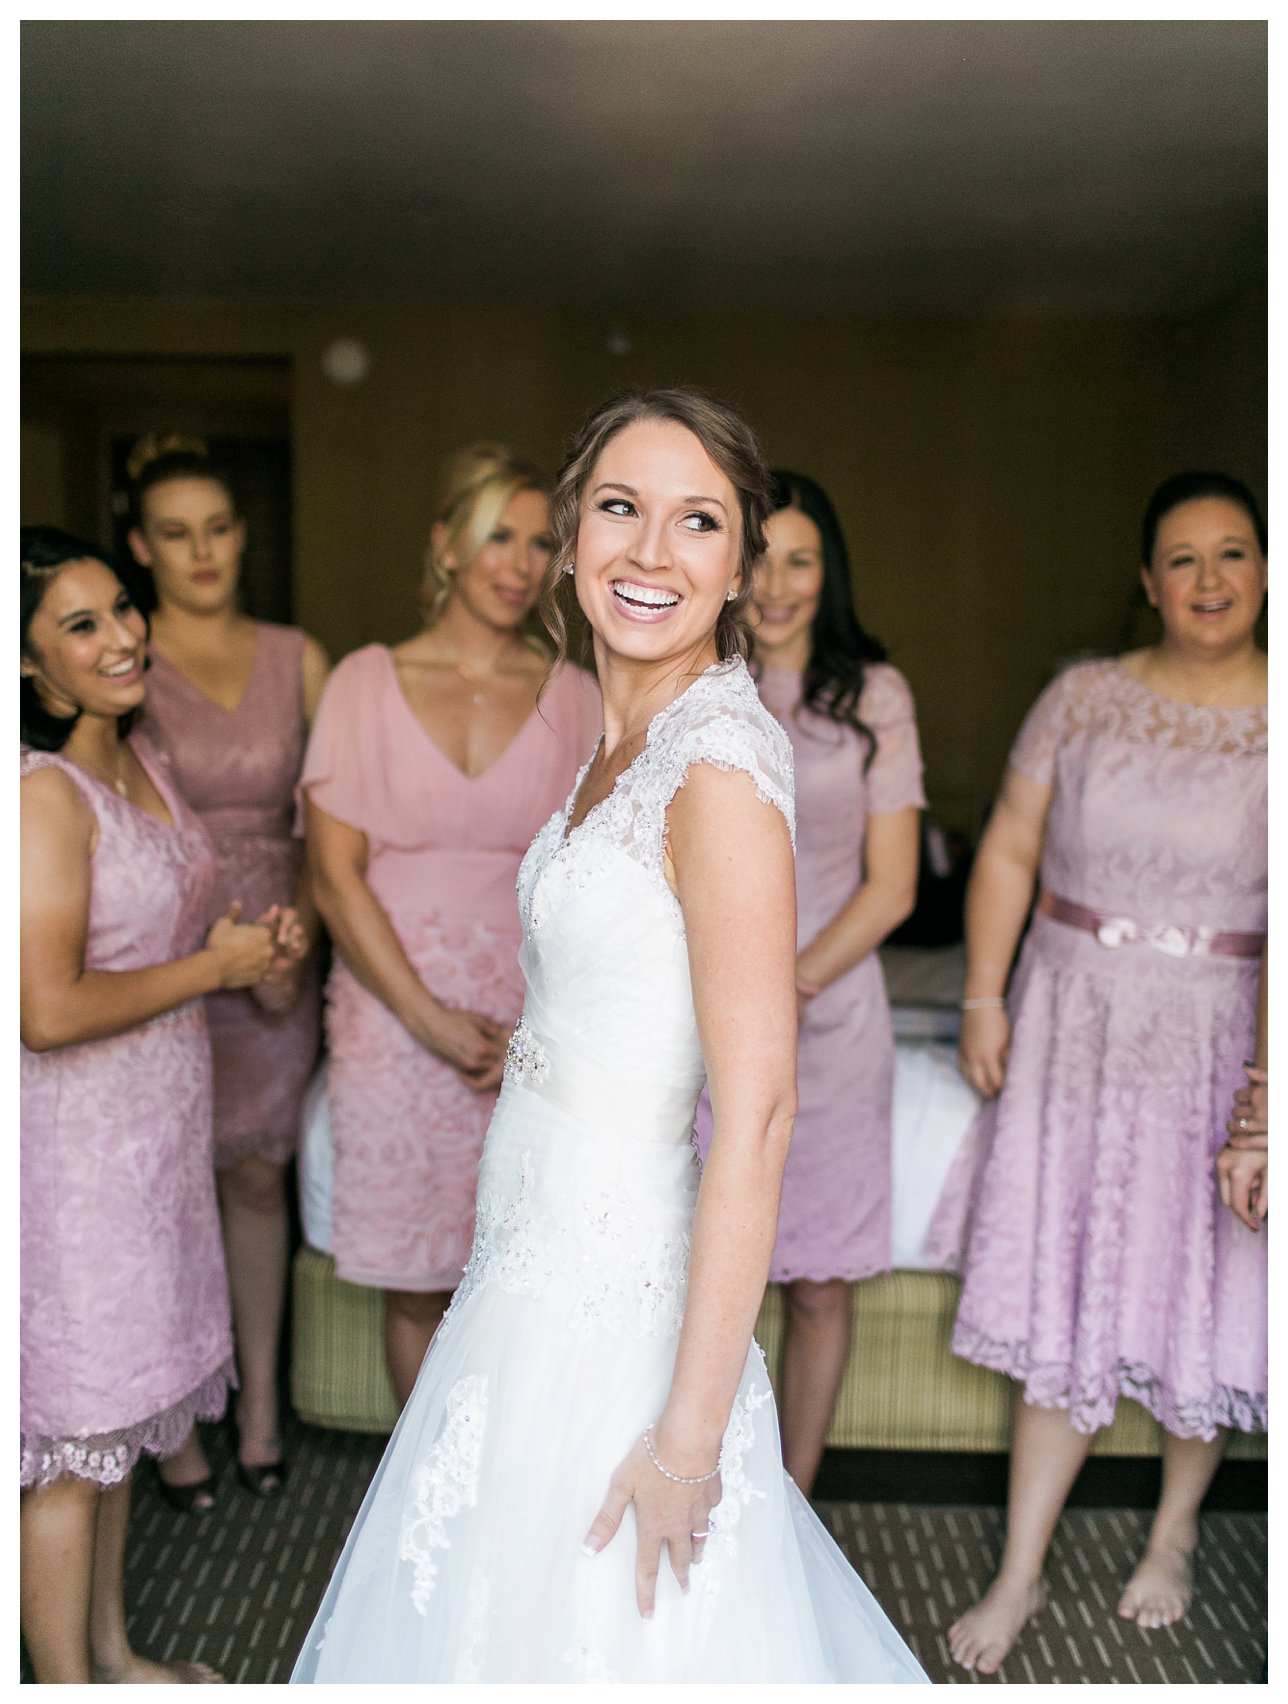 Scottsdale Wedding Photographer | Rachel Solomon Photography_4495